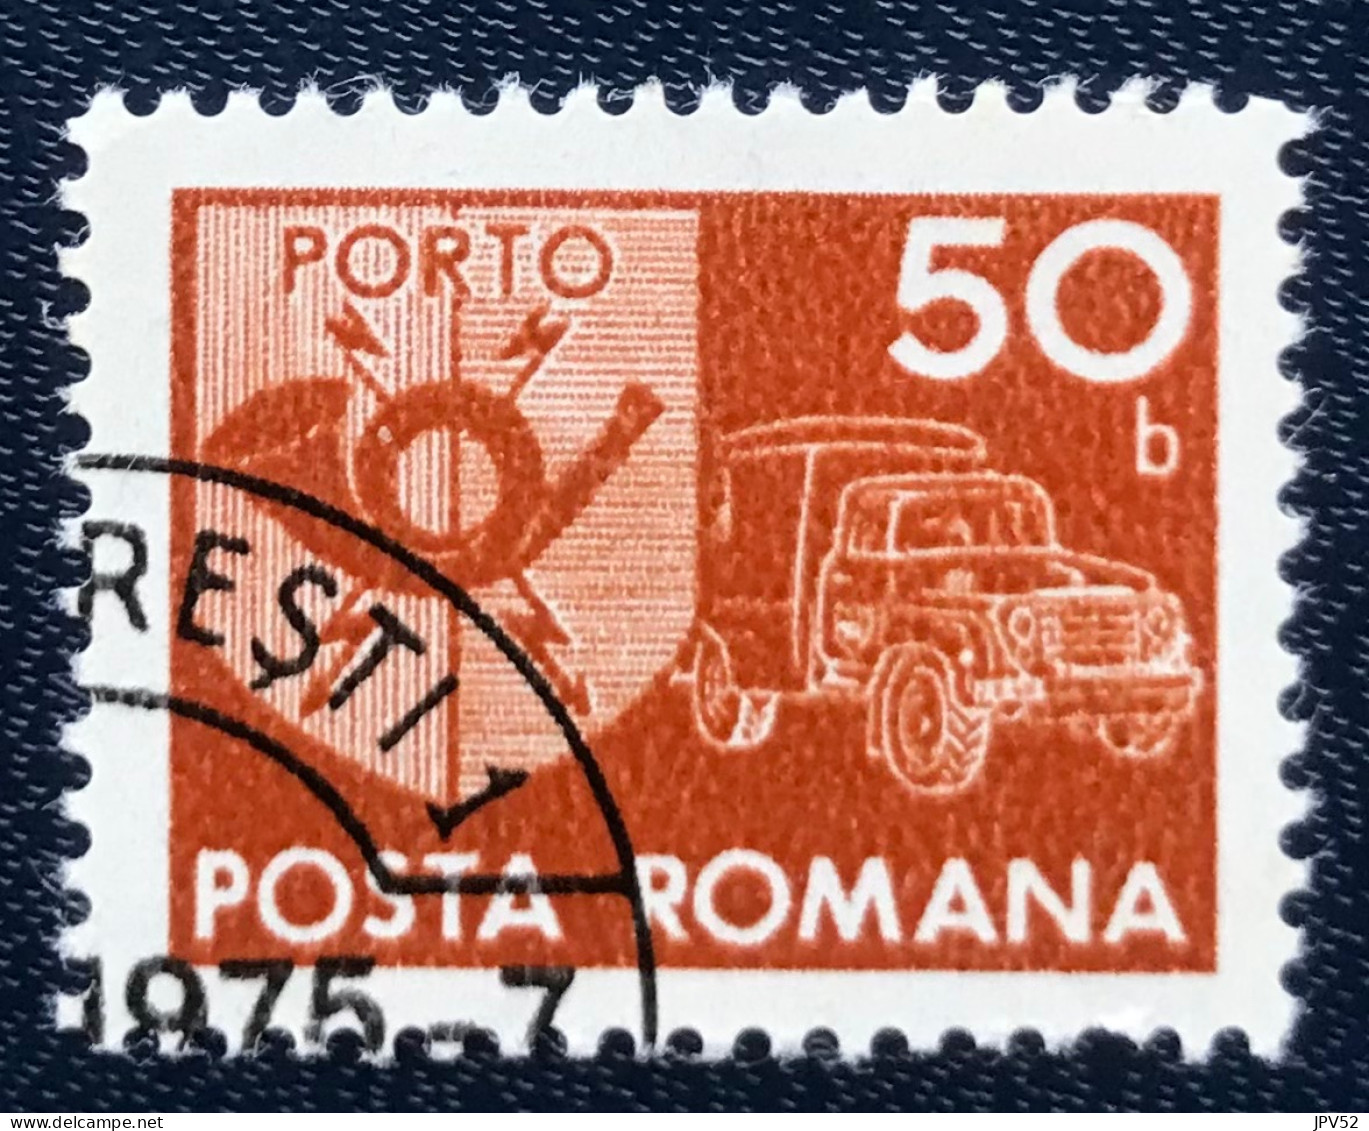 Romana - Roemenië - C14/55 - 1974 - (°)used - Michel 123 - Postembleem & Postvoertuig - Postage Due